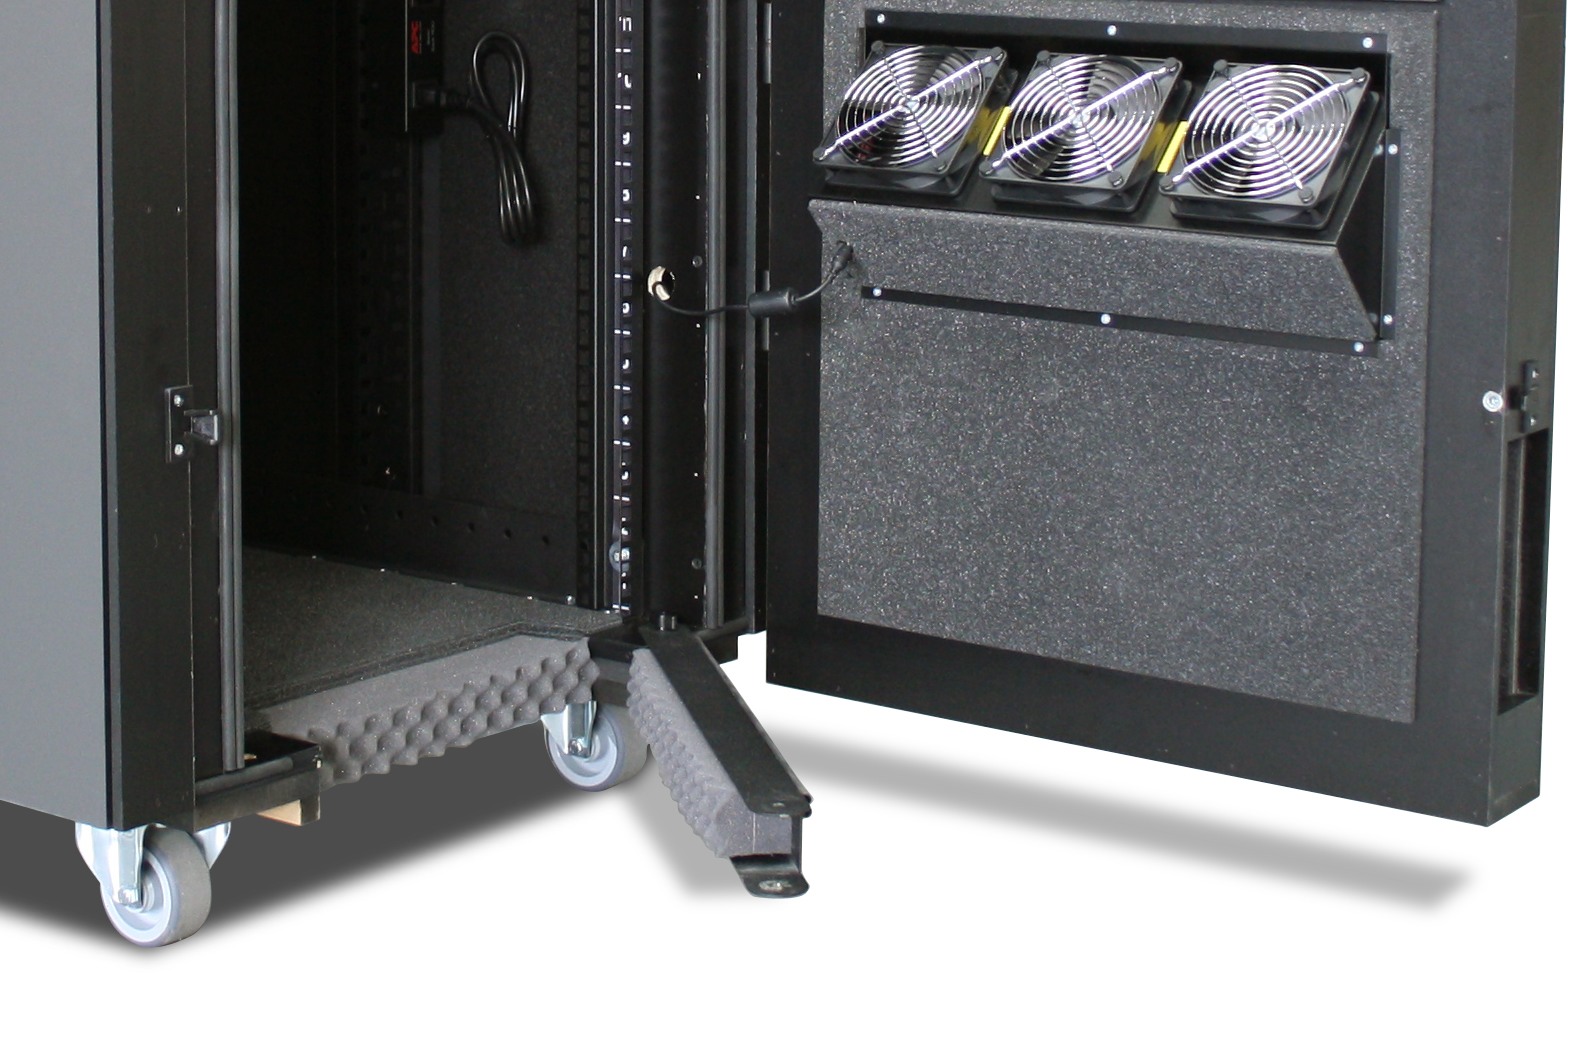 Шумоизолированный шкаф APC NetShelter CX - исполнение шумоизоляции